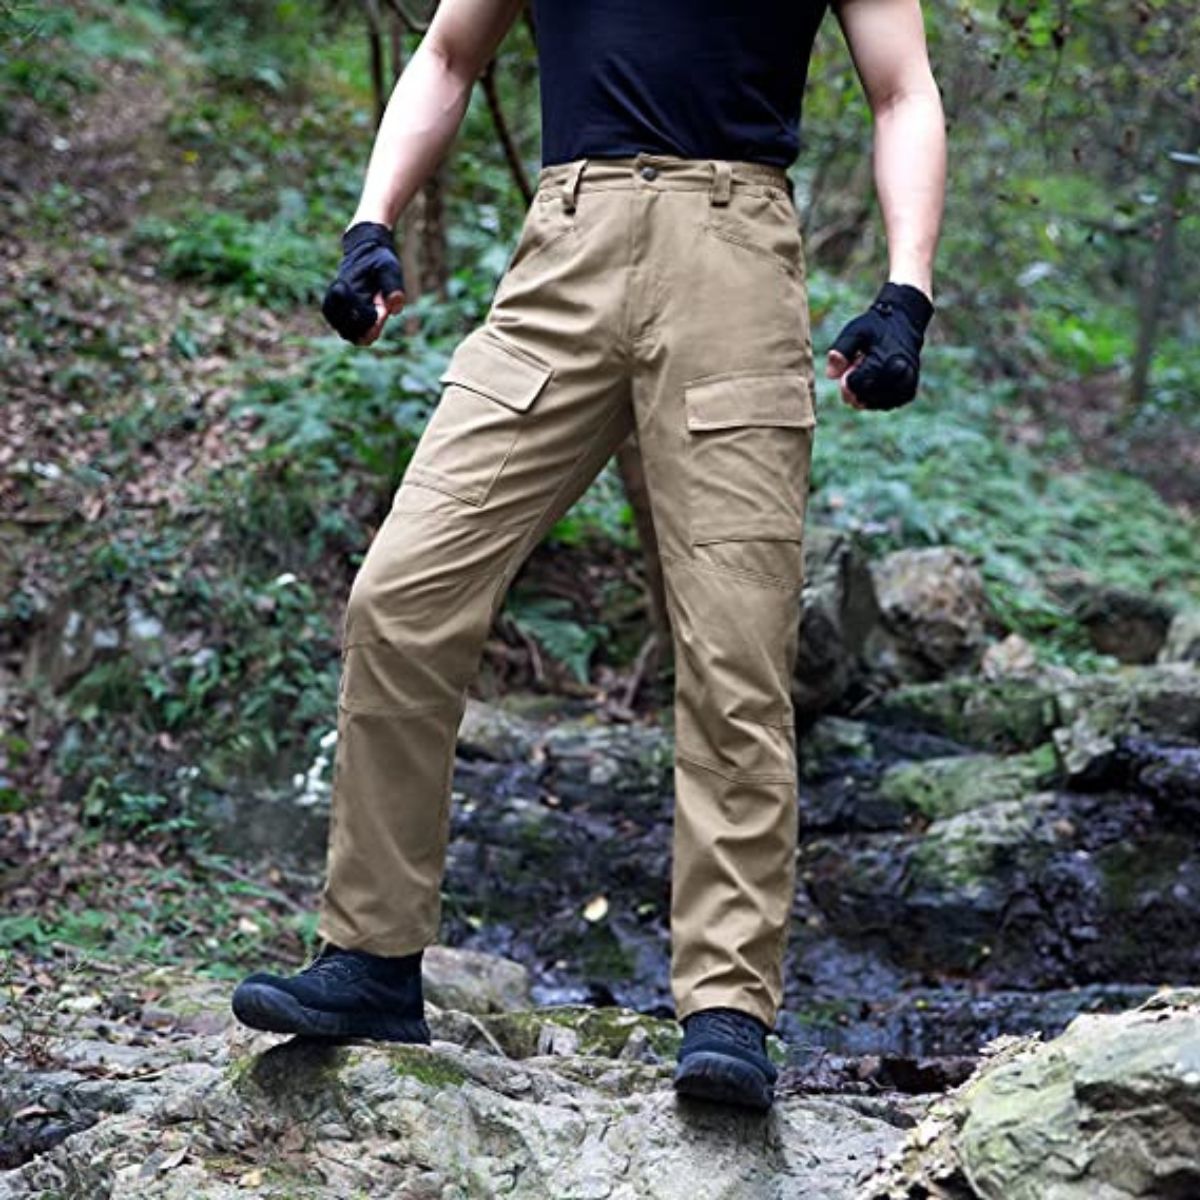 HAOTAGS Men's Tactical Ripstop Cargo Pants Zipper Closure Button Down  Casual Athletic Pants for Men Khaki Size XL 